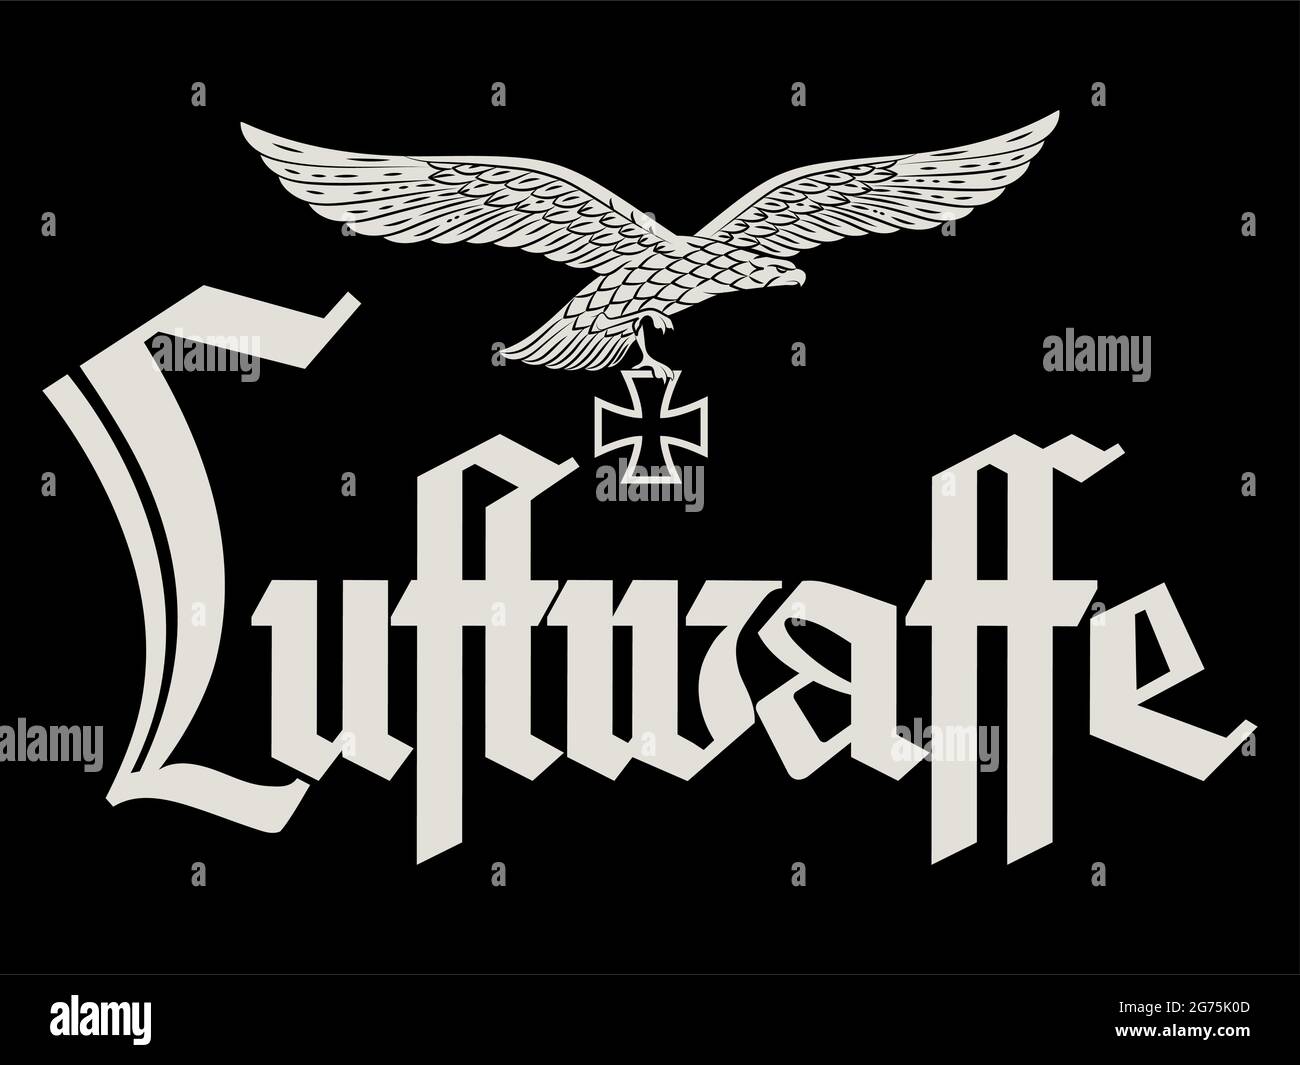 Progettato dall'Aeronautica tedesca. Aquila araldica, croce di ferro e l'iscrizione della Luftwaffe, tradotta in inglese - Air Force Illustrazione Vettoriale